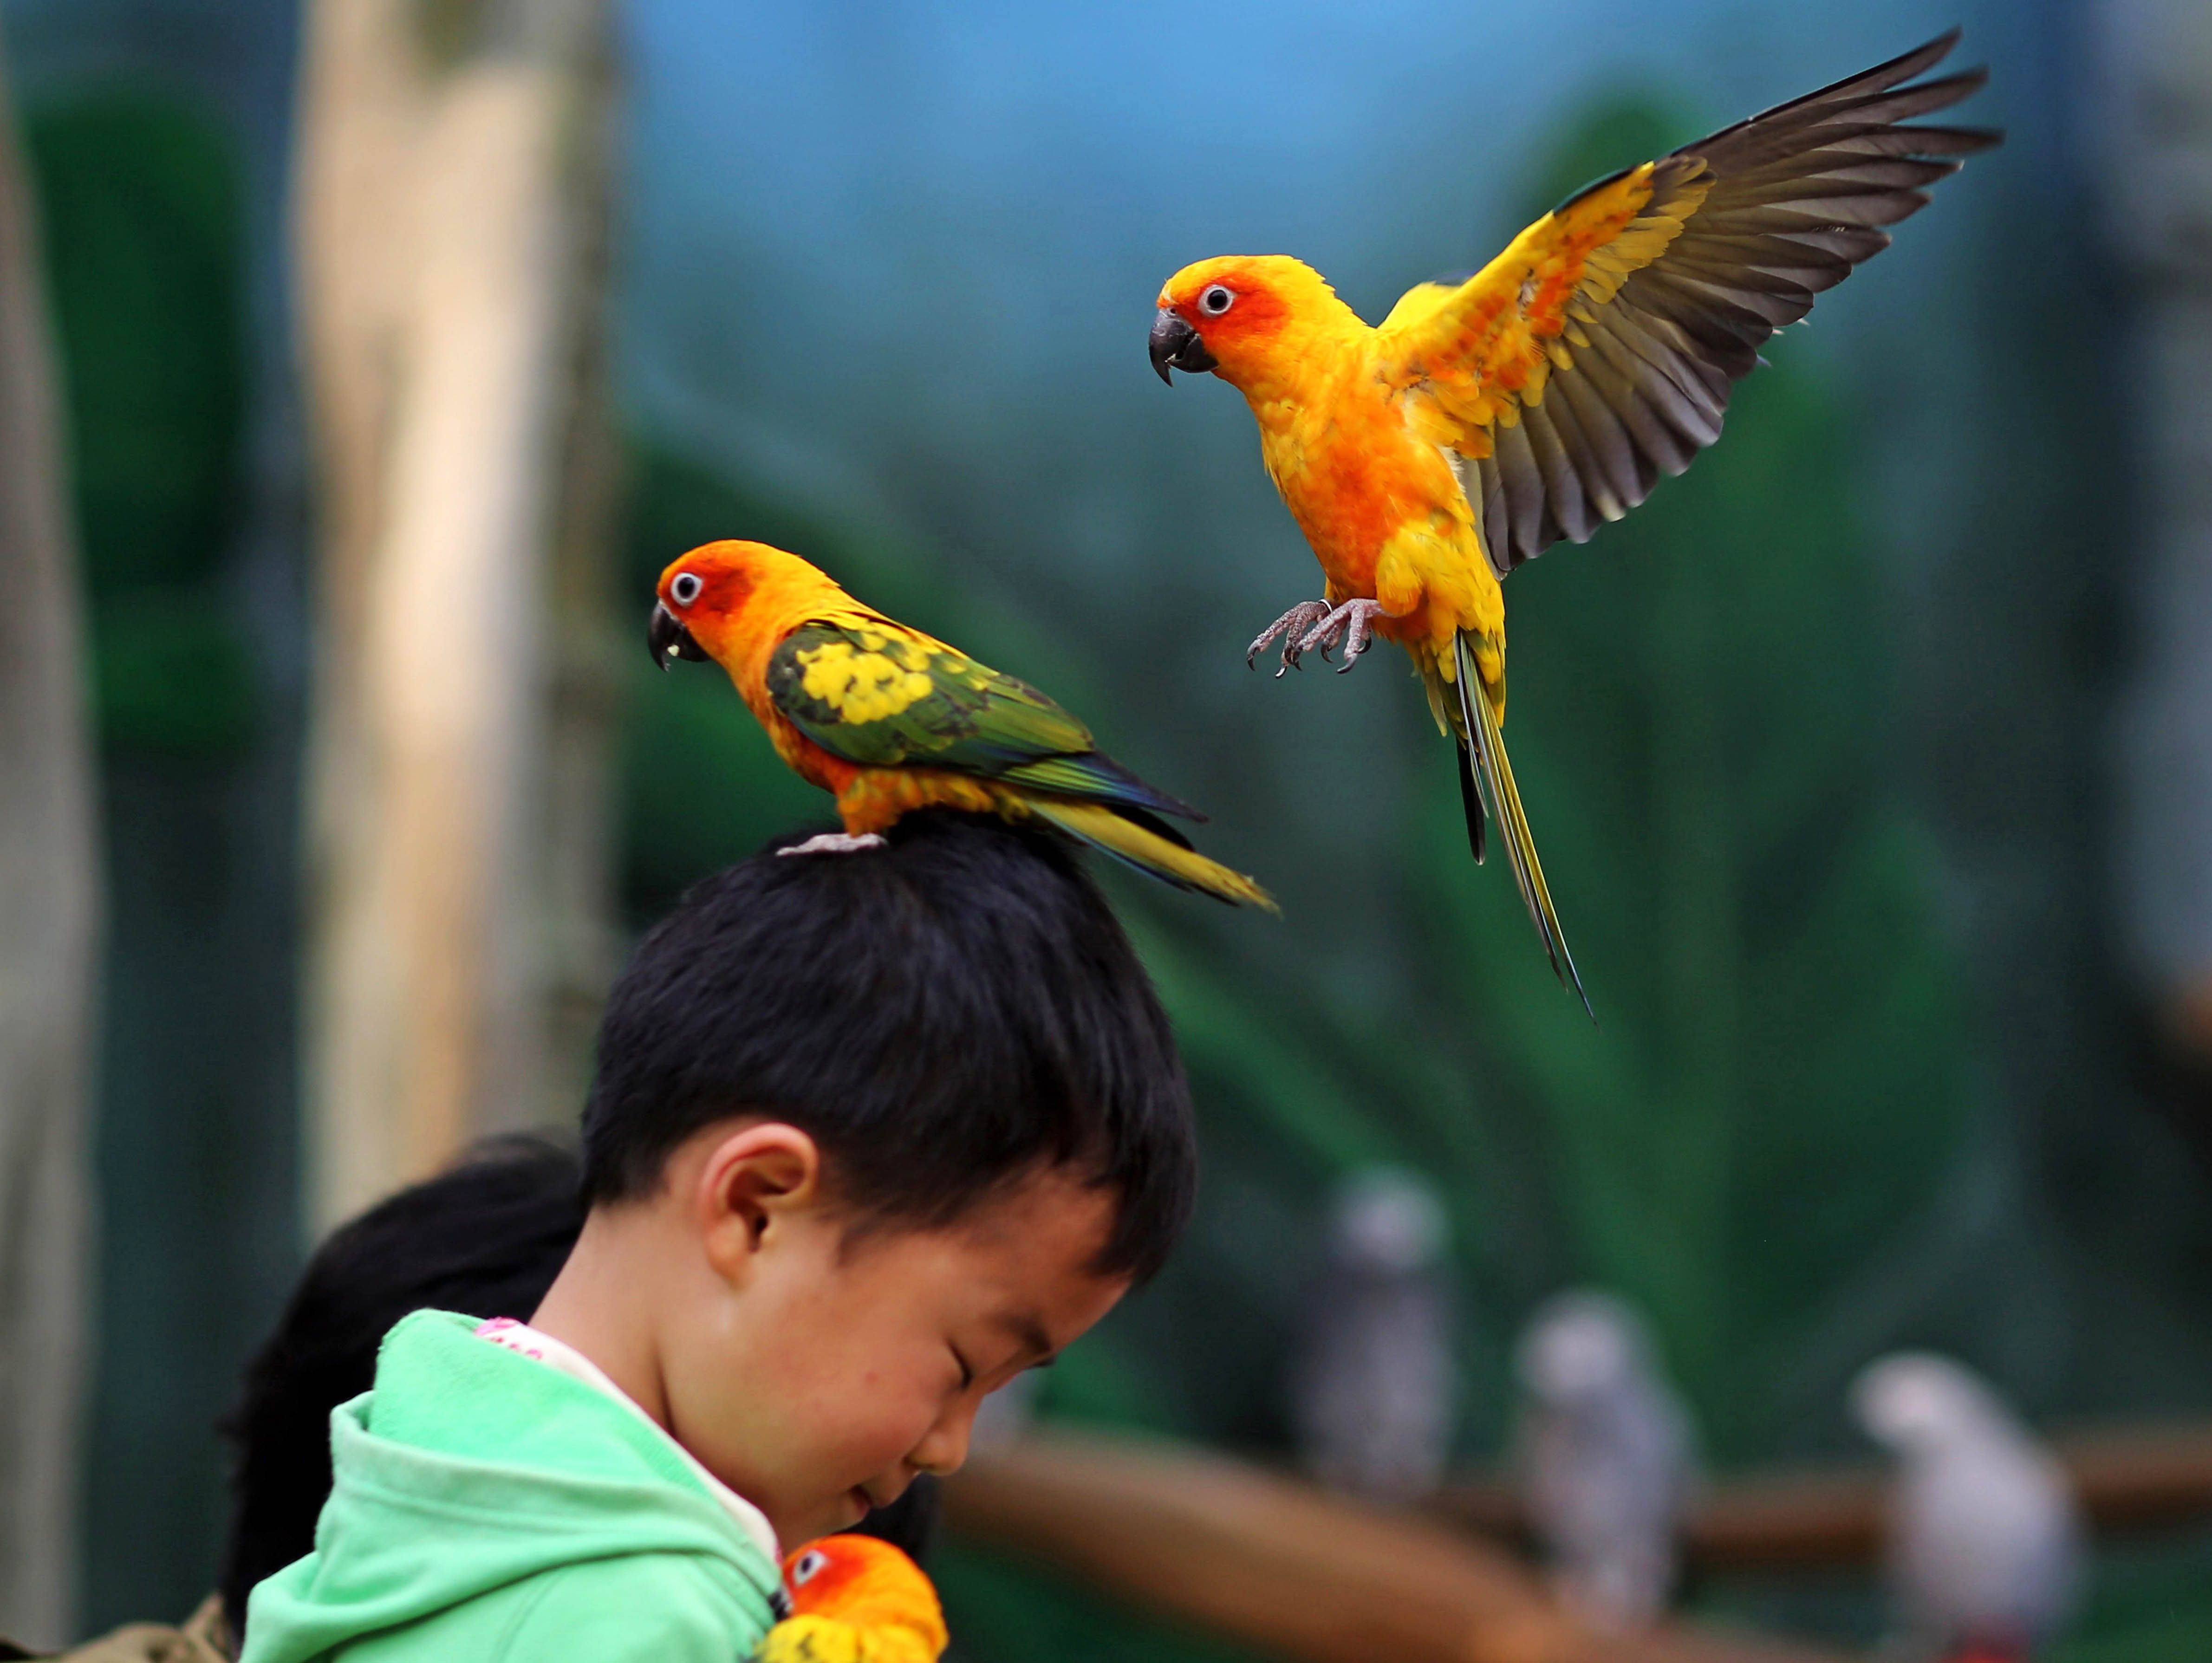 В зоопарке живут 5 видов попугаев. Птицы попугаи. Птицы Китая. Птицы в зоопарке. Попугай для детей.